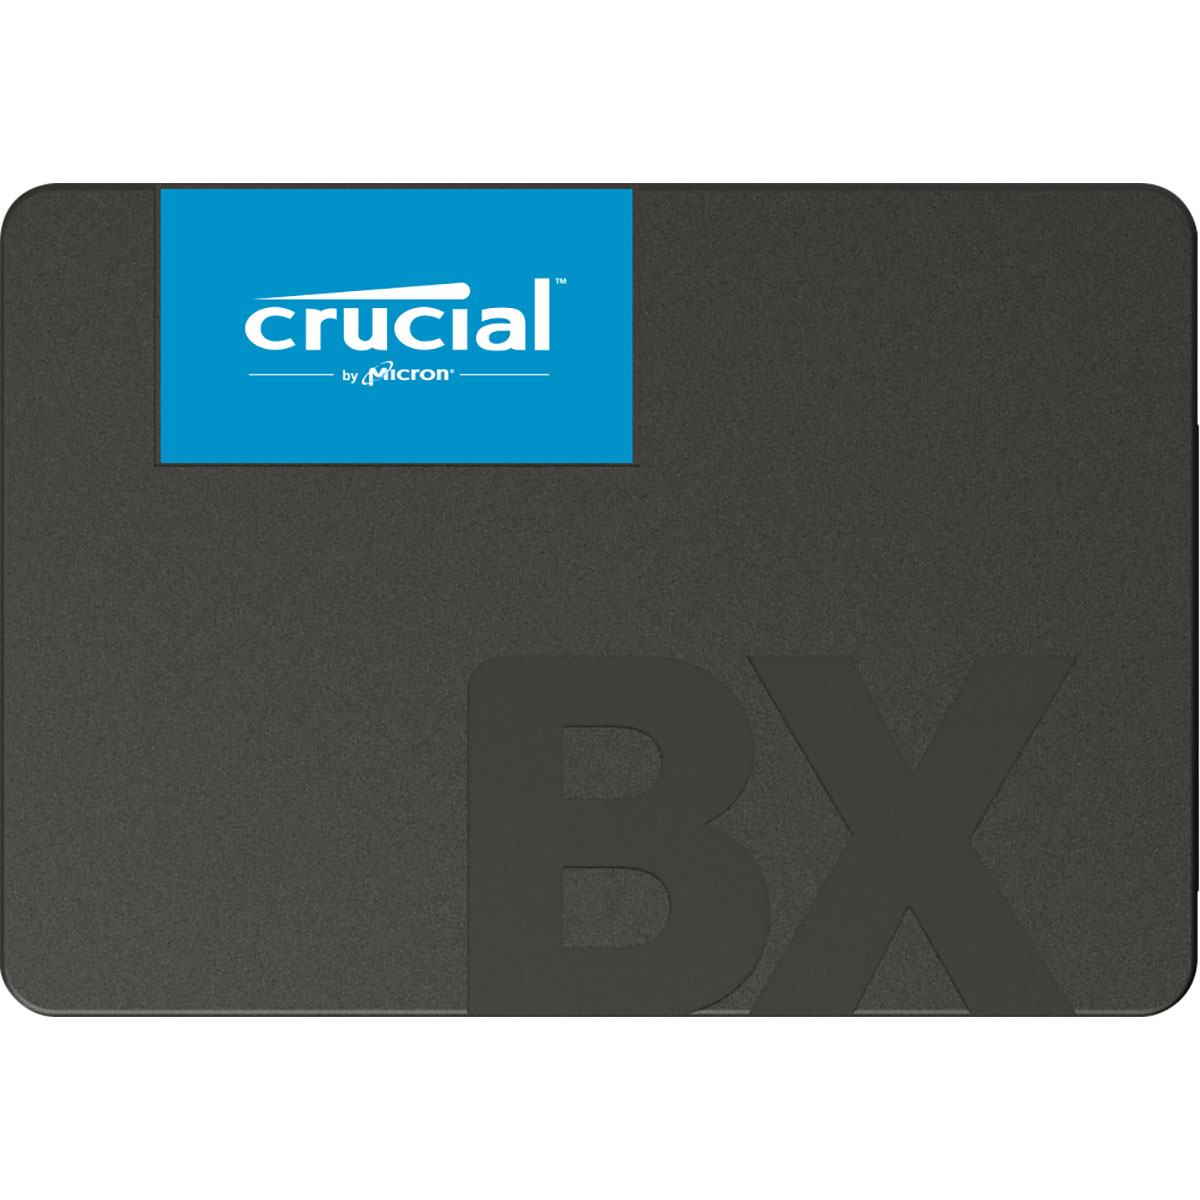 Disque dur SSD Crucial BX500 480 Go 2.5 pouces (7mm) Serial ATA 3 (6Gb/s)s, informatique ile de la Runion 974